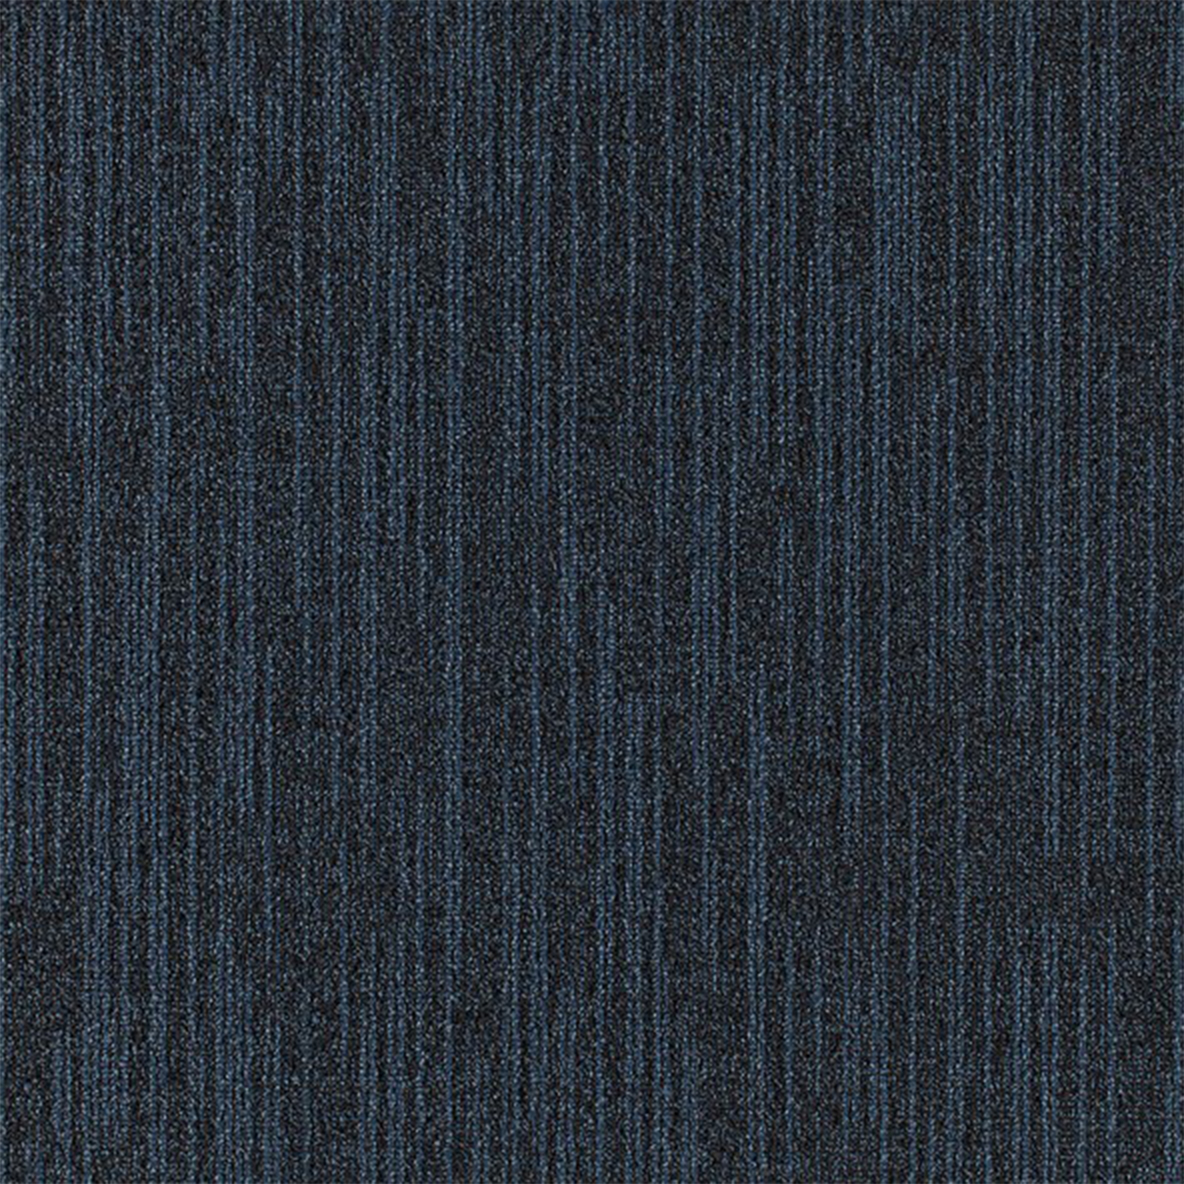 Overdirve Commercial Carpet Tile .30 Inch x 50x50 cm per Tile Midnight color close up